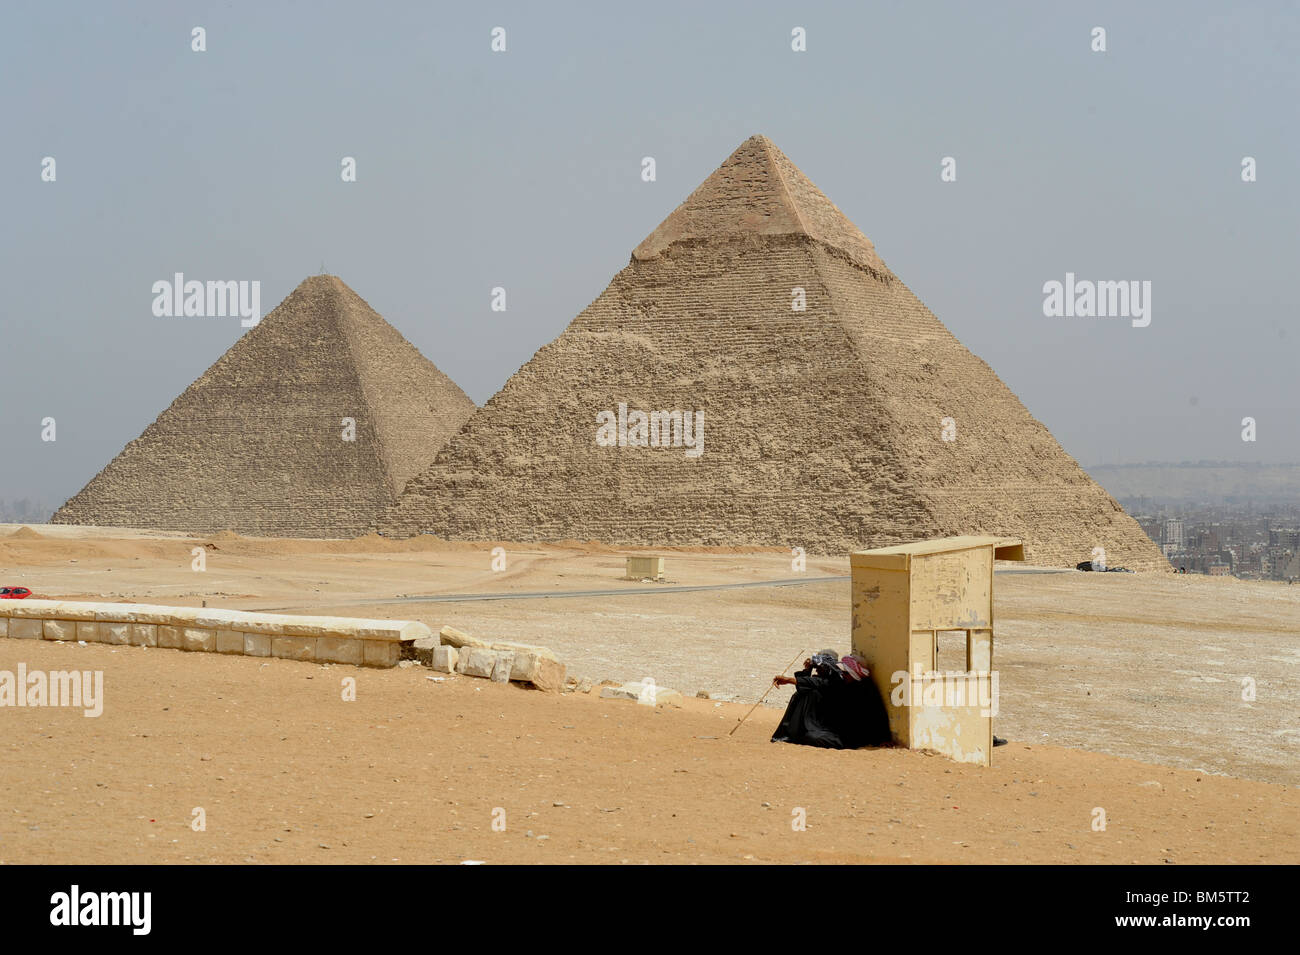 Ägypter ausruhen im Schatten, Pyramiden von Giza, Gizeh Nekropole an der Grenze was ist jetzt El Giza, Cairo, Ägypten Stockfoto